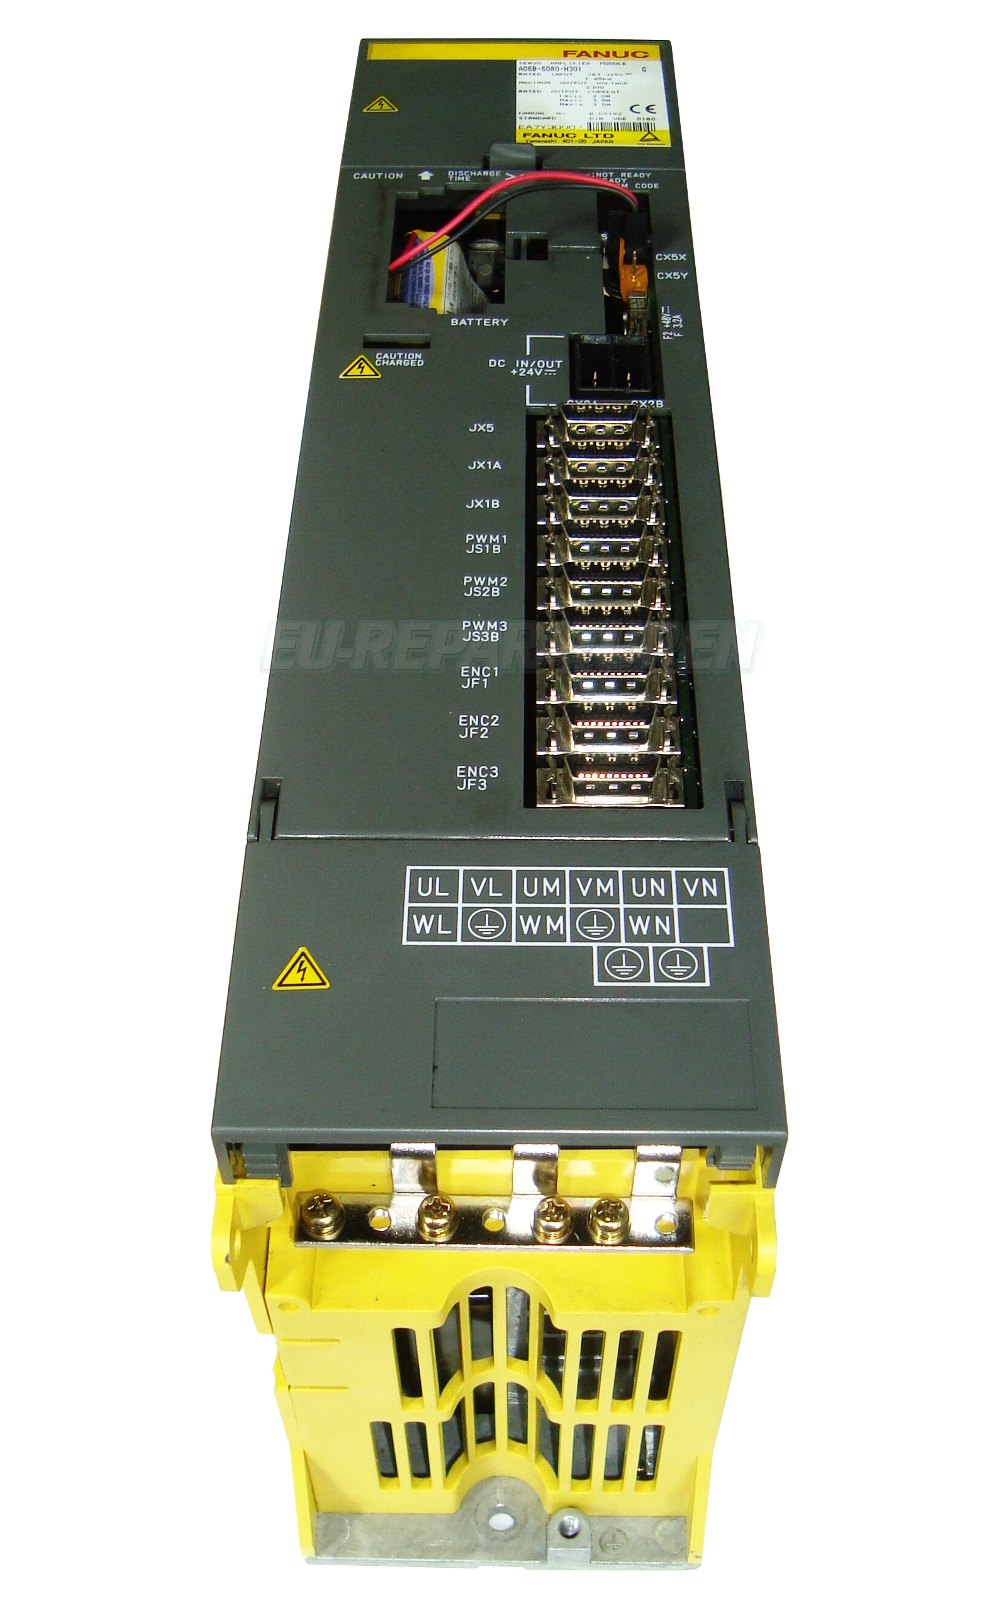 2 Frequenzumrichter A06b-6080-h301 Mit Garantie Reparatur